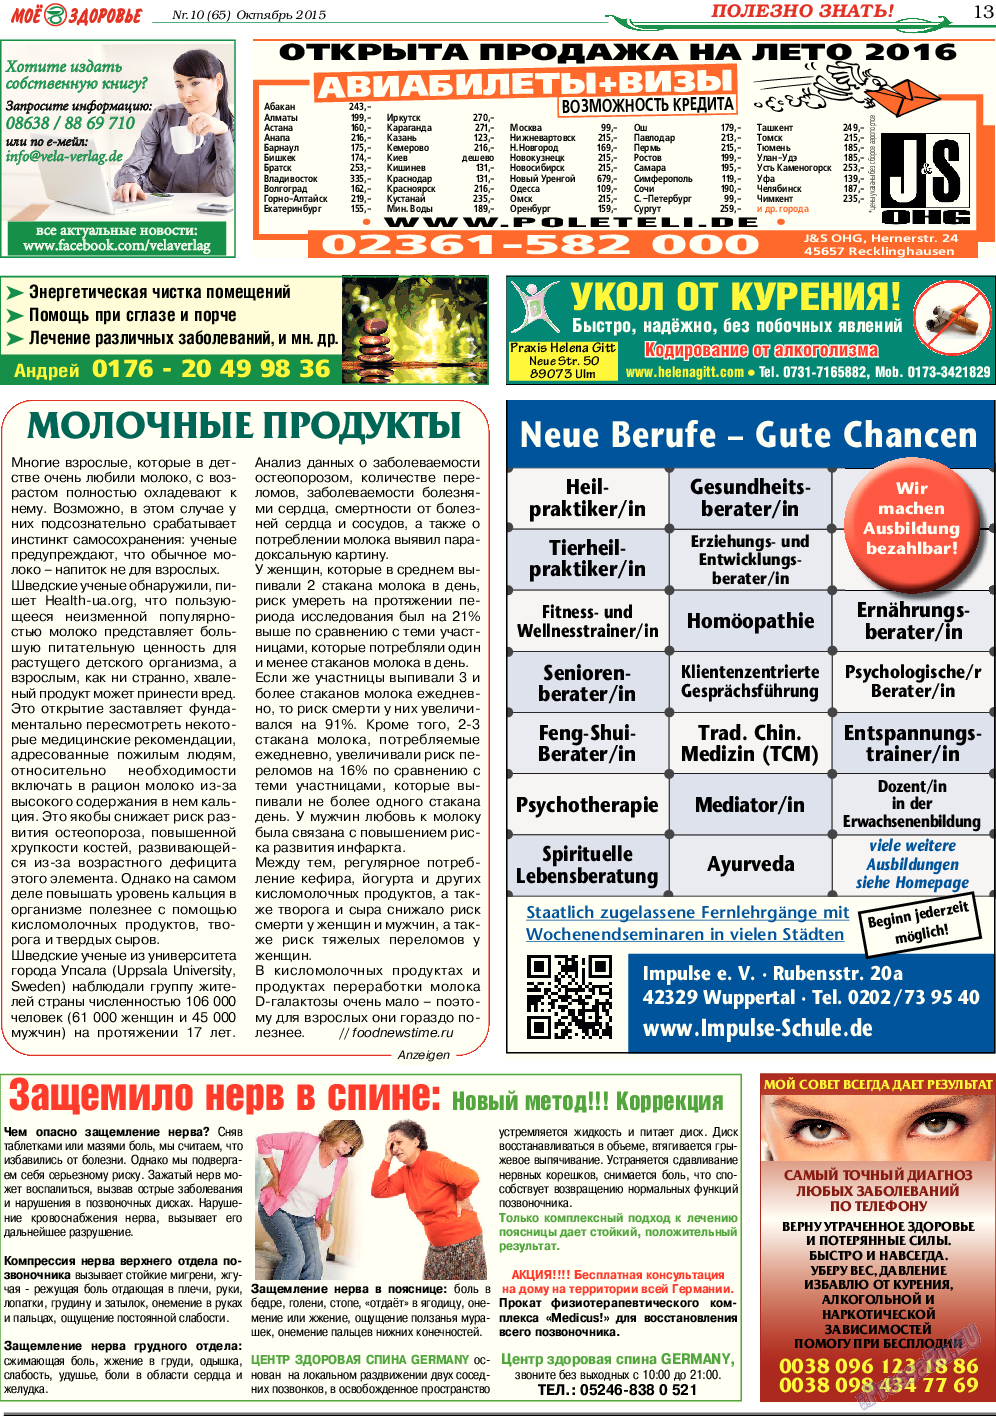 Кругозор (газета). 2015 год, номер 10, стр. 13